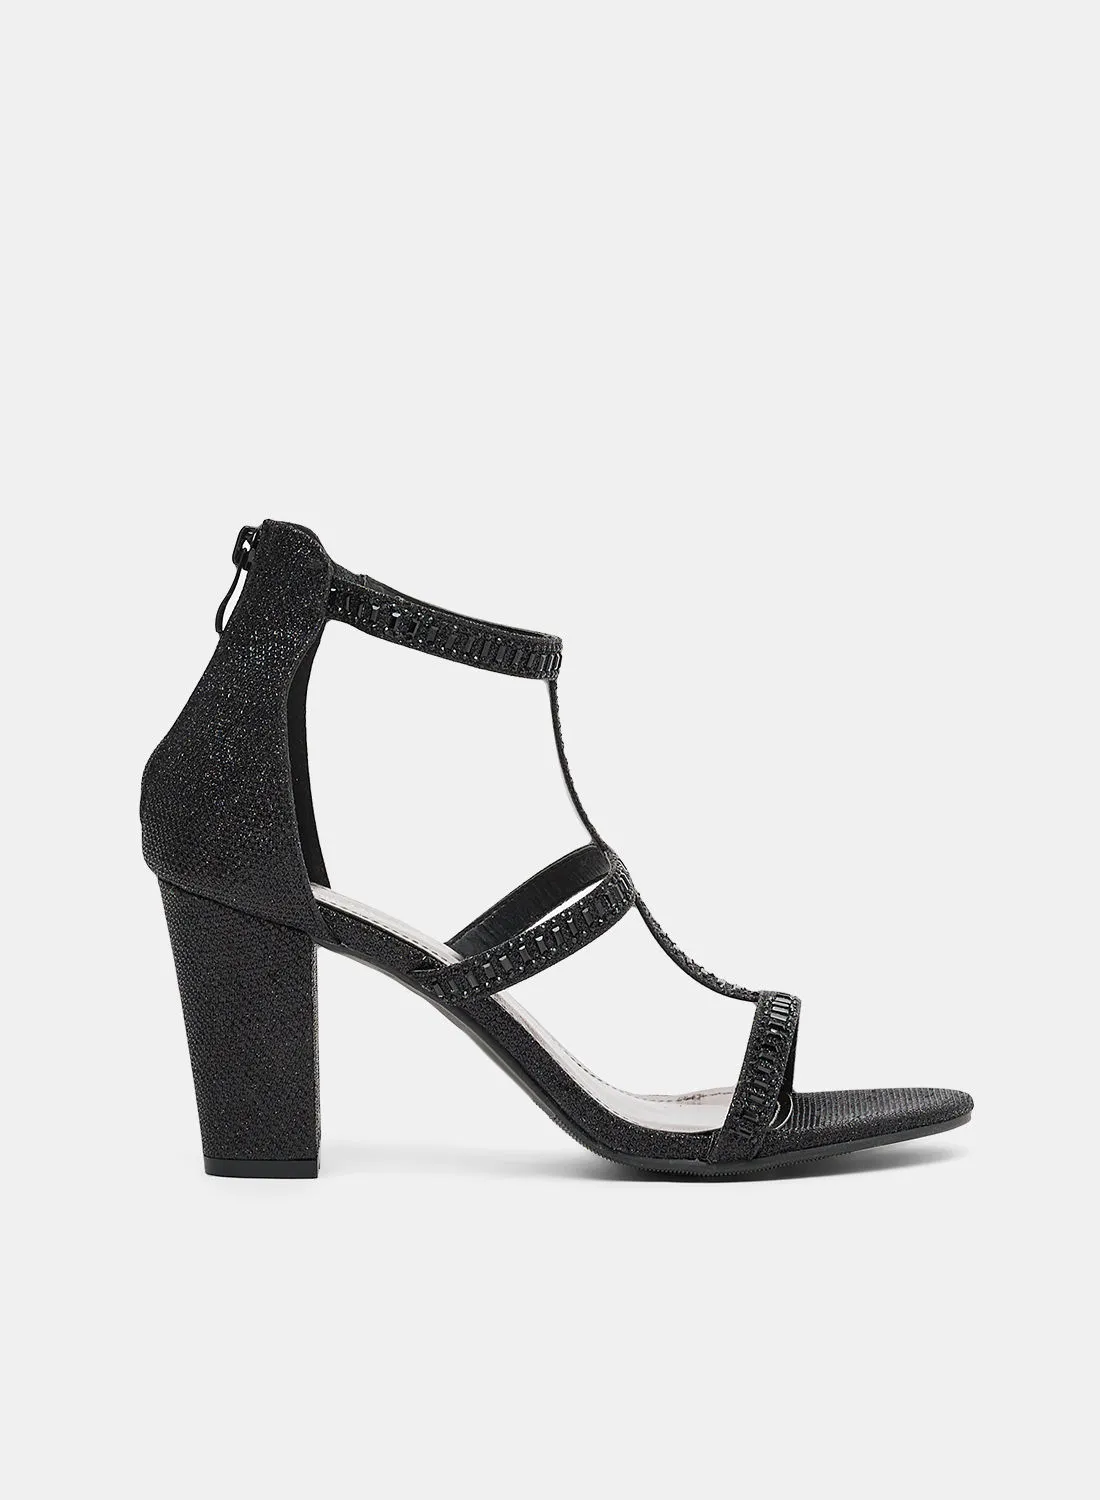 Anne Michelle Strappy High-Heel Sandals